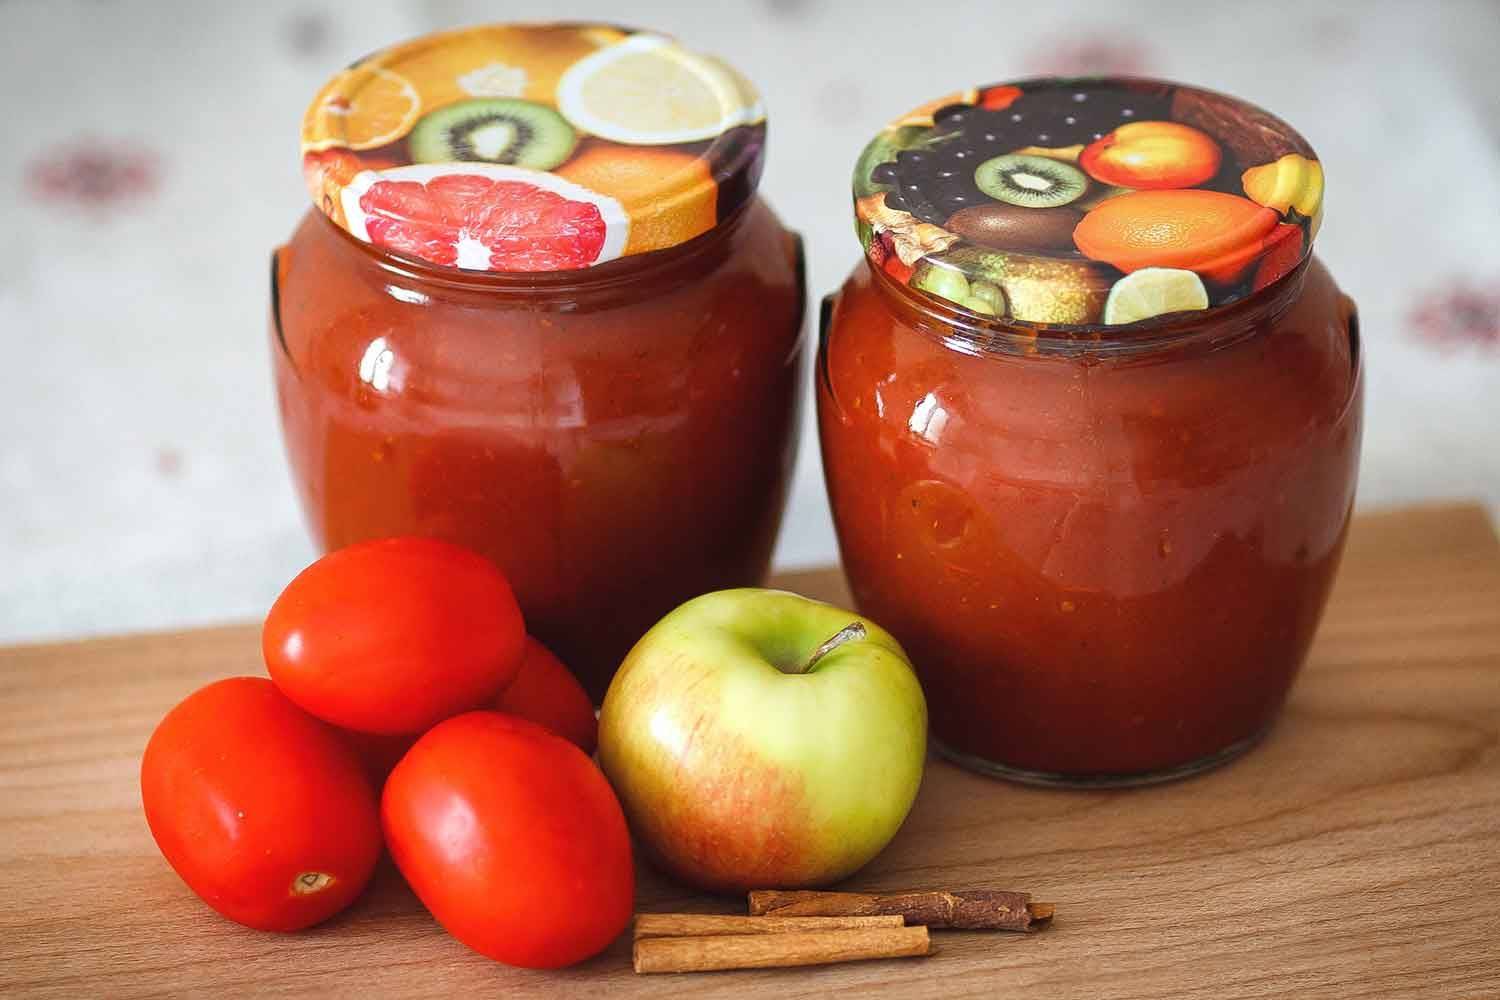 Кетчуп из помидоров на зиму своими руками: пальчики оближешь, с яблоками - простой рецепт с фото пошагово томатного кетчупа в домашних условиях